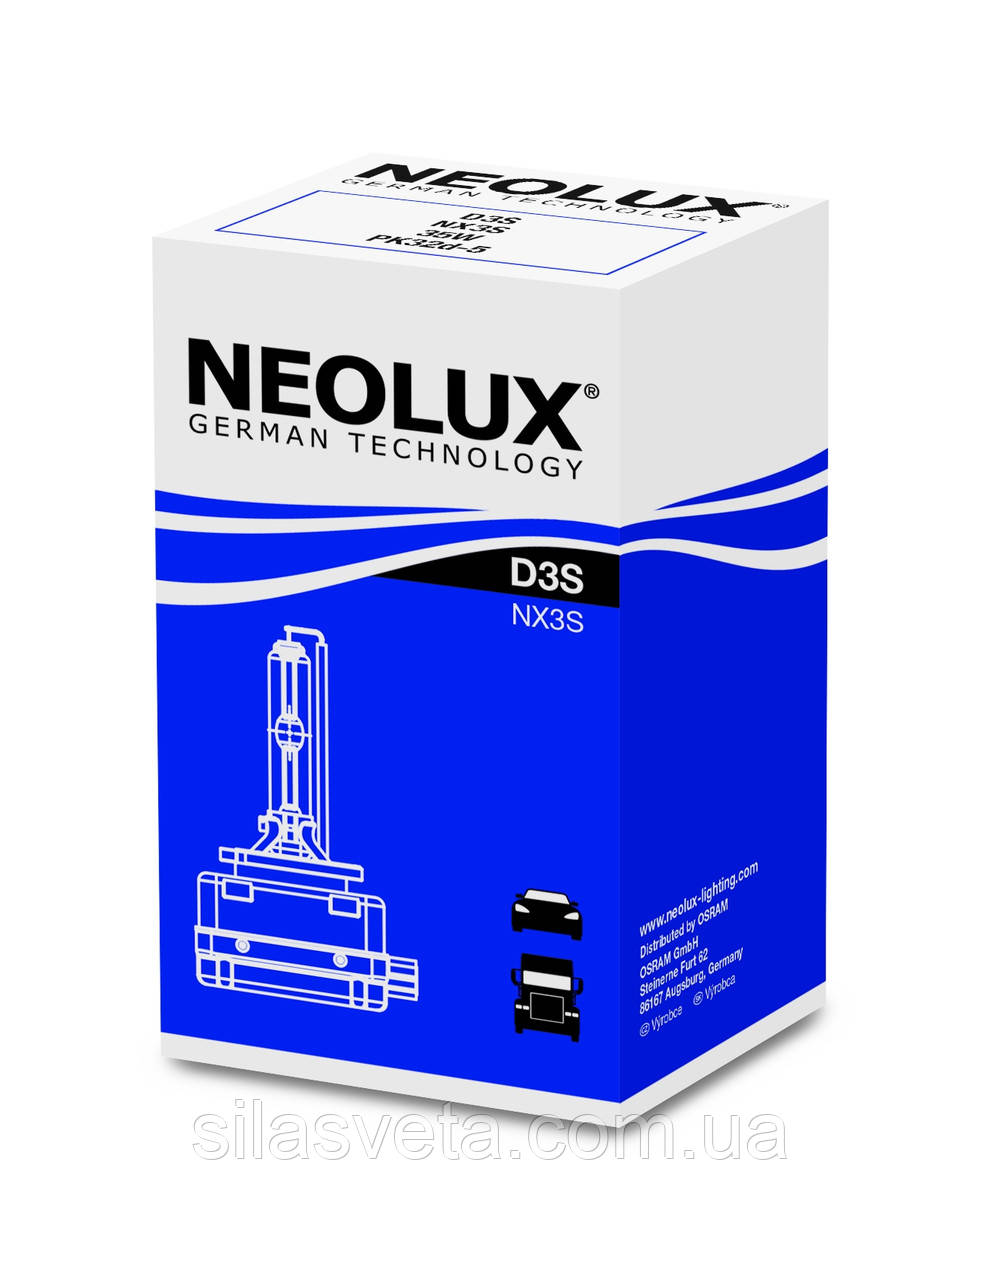 Оригінальна штатна ксенонова газорозрядна лампа "Neolux" D3S (4300K)